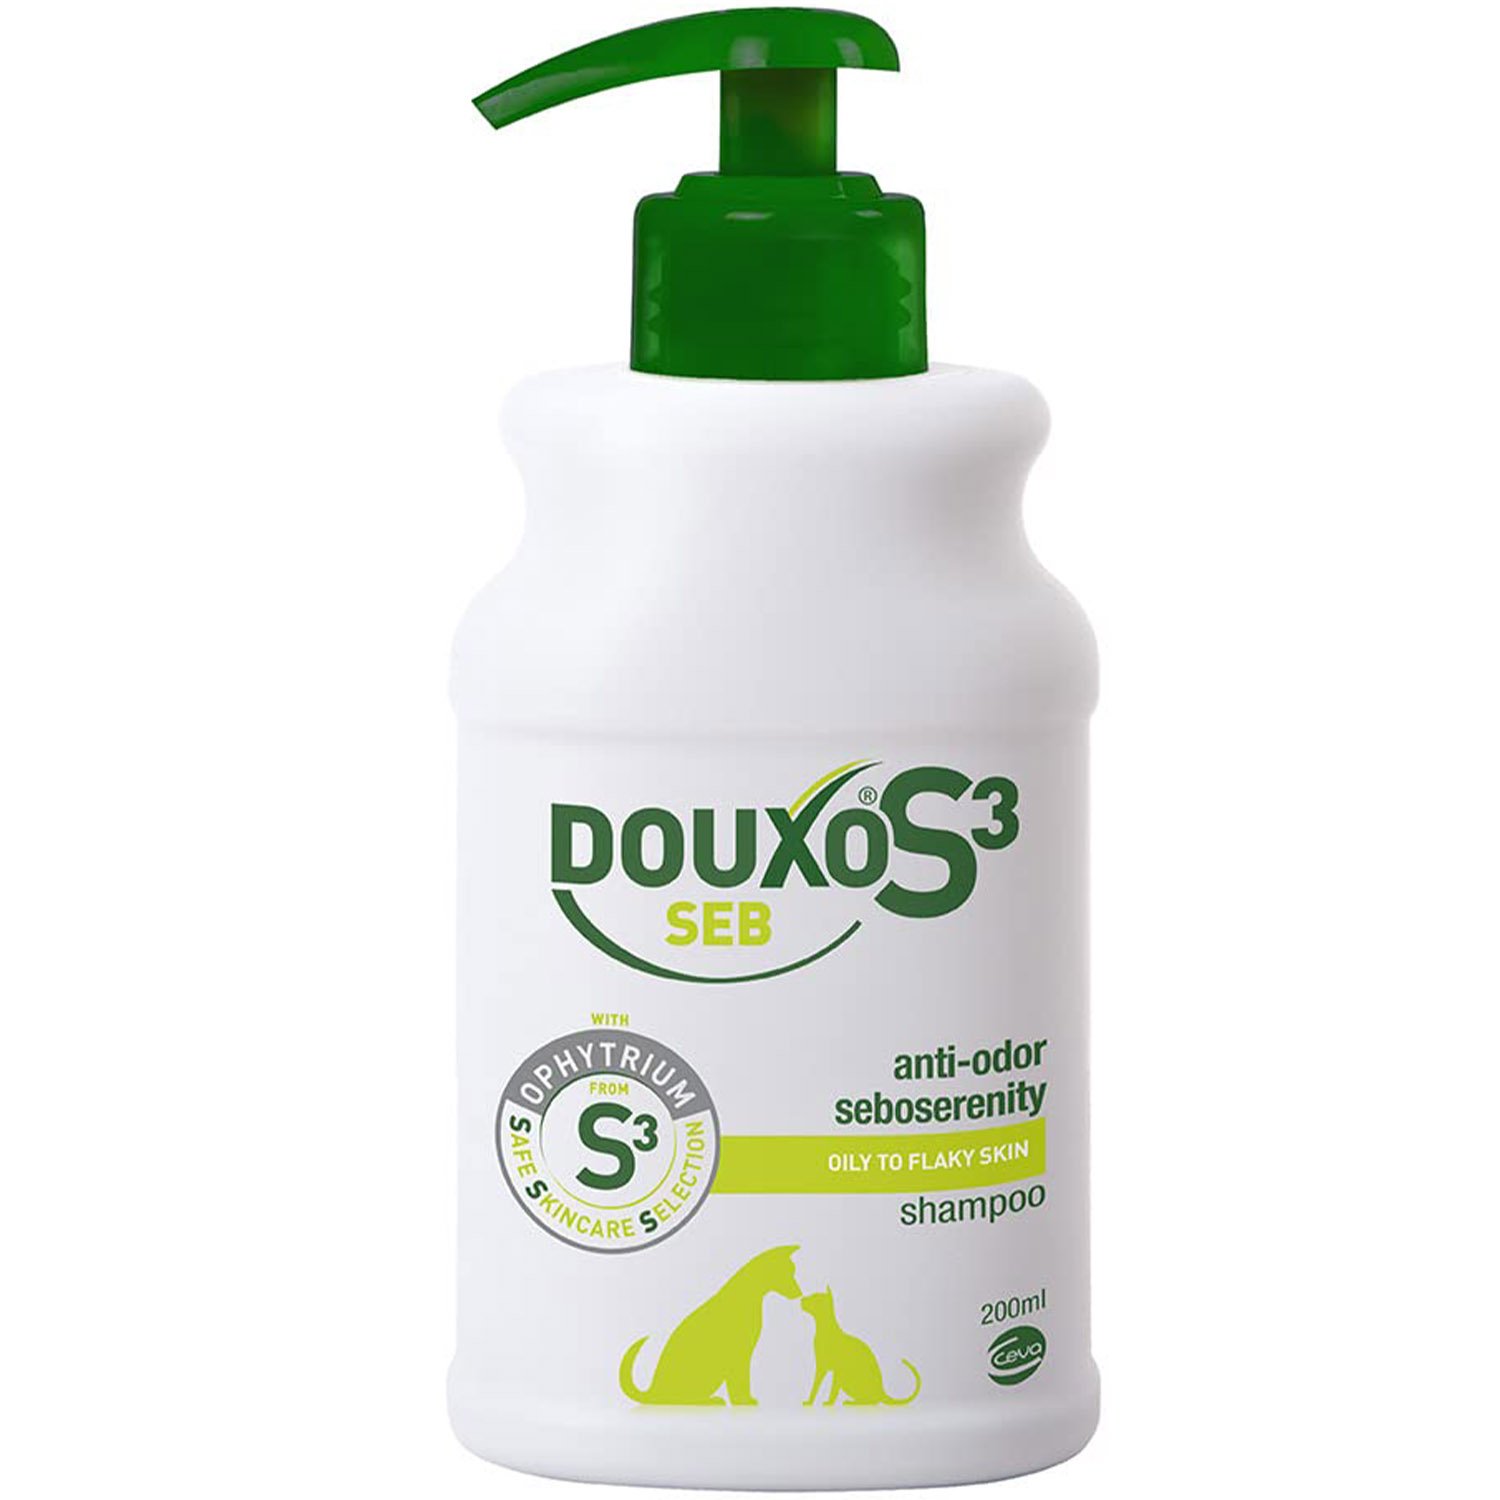 Лечебный шампунь Douxo S3 Seb для жирной кожи собак и кошек себорегулирующий 200 мл - фото 1